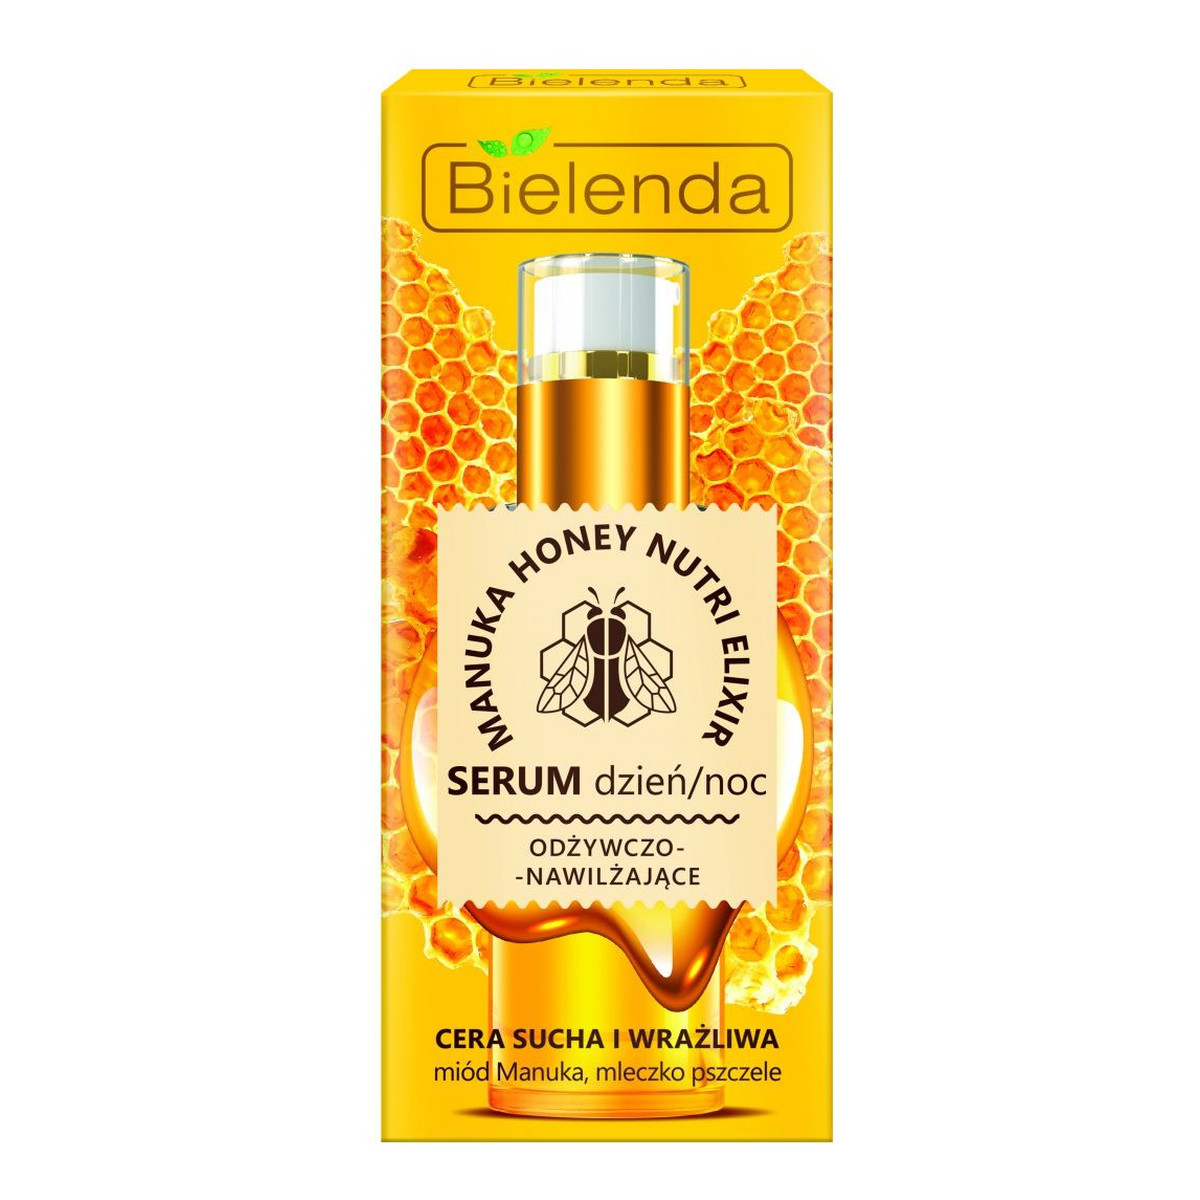 Bielenda Manuka Honey Nutri Elixir Serum odżywczo-nawilżające na dzień i noc 30g